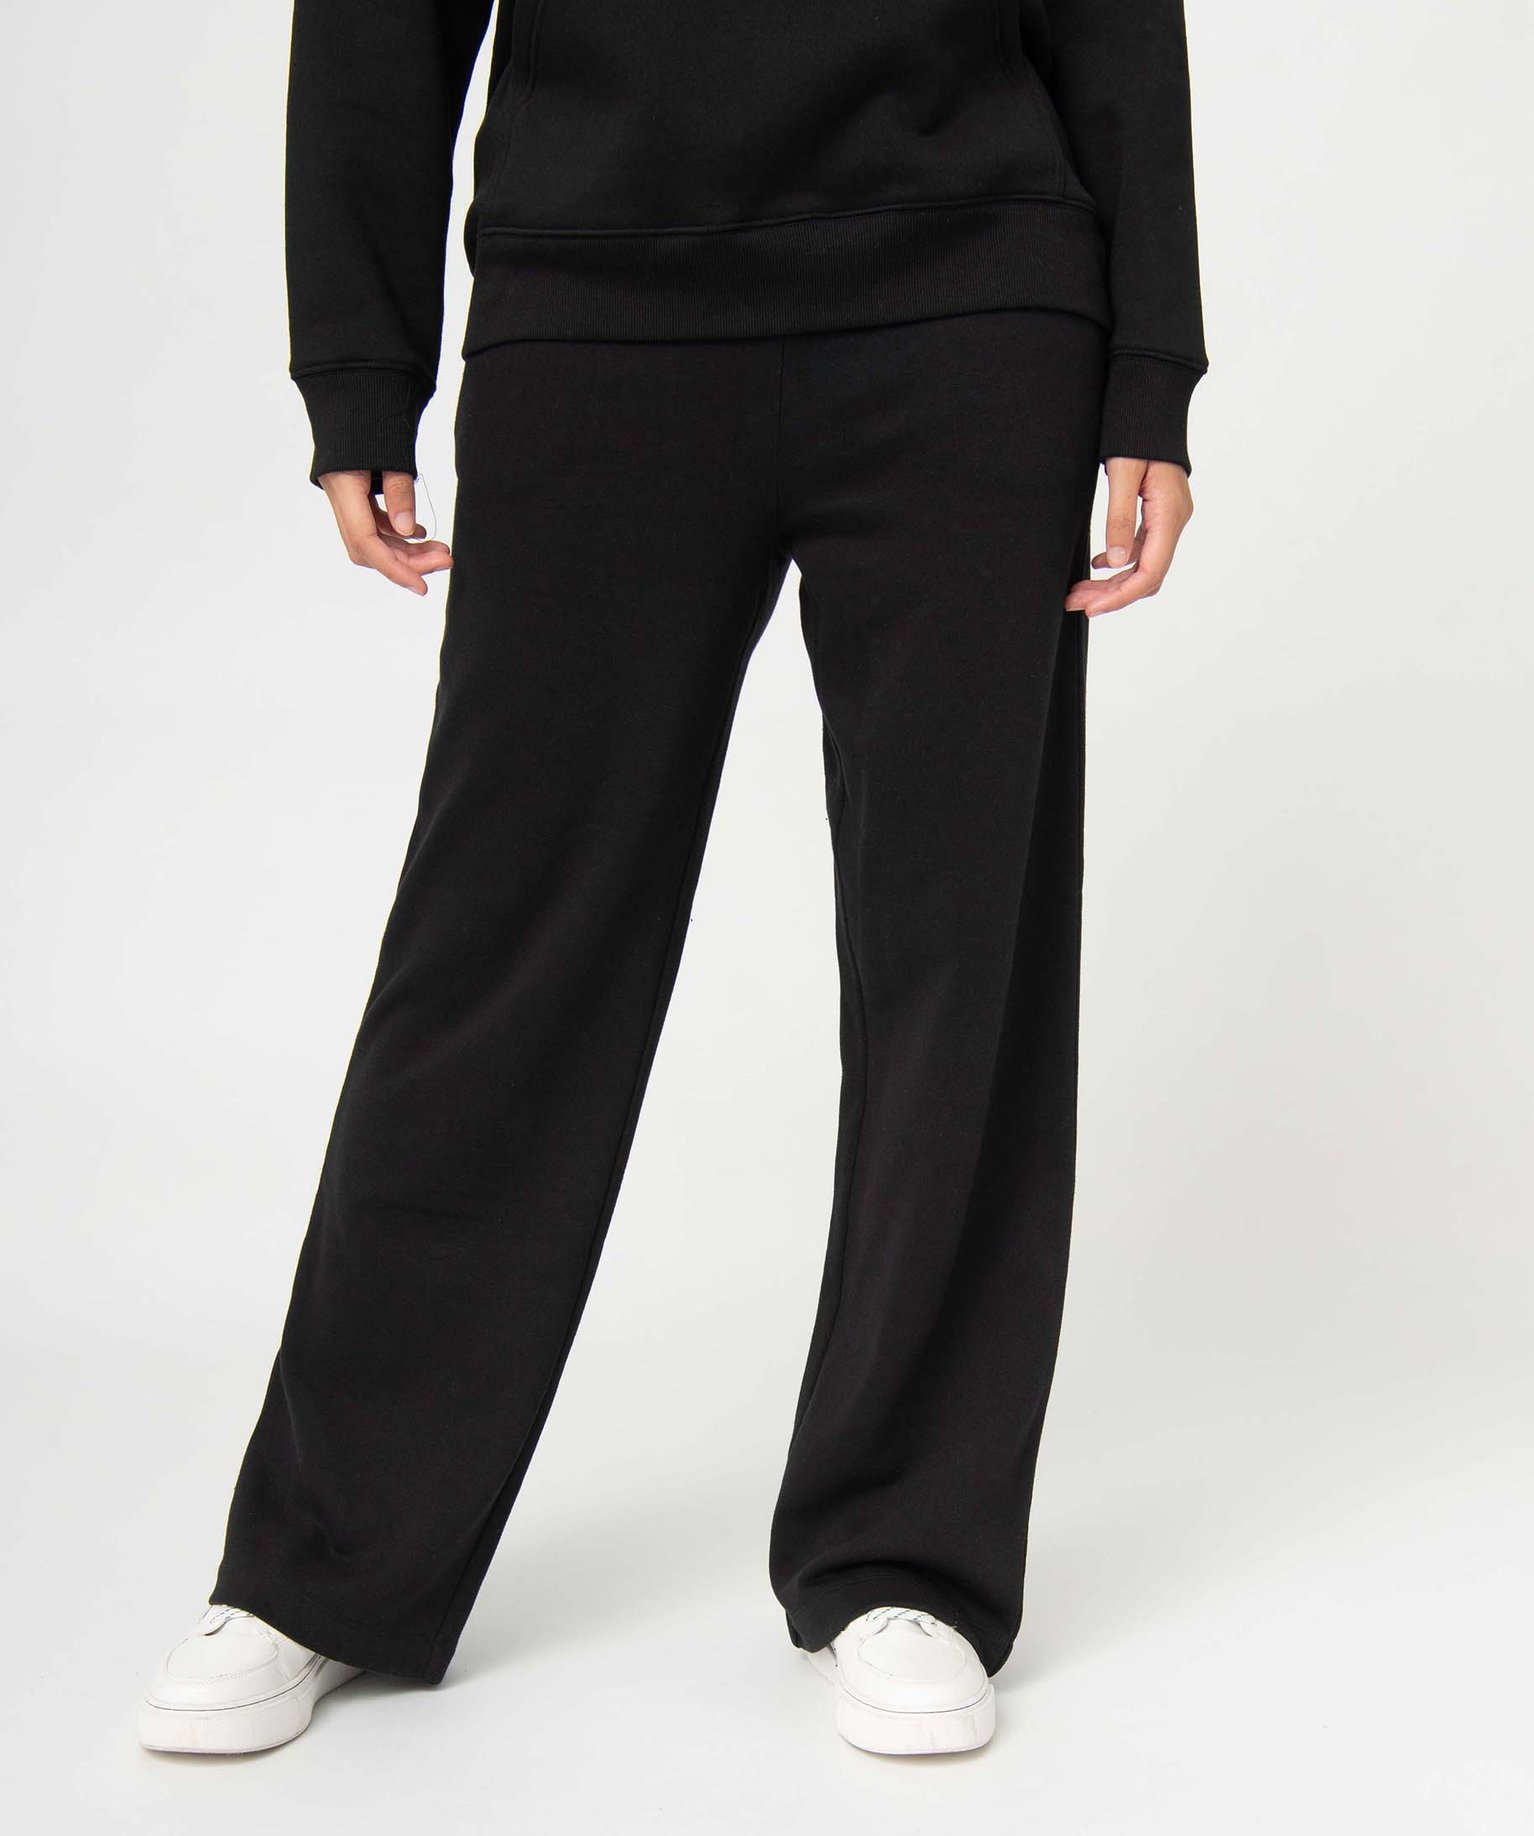 pantalon de jogging pour femme coupe ample noir pantalons femme